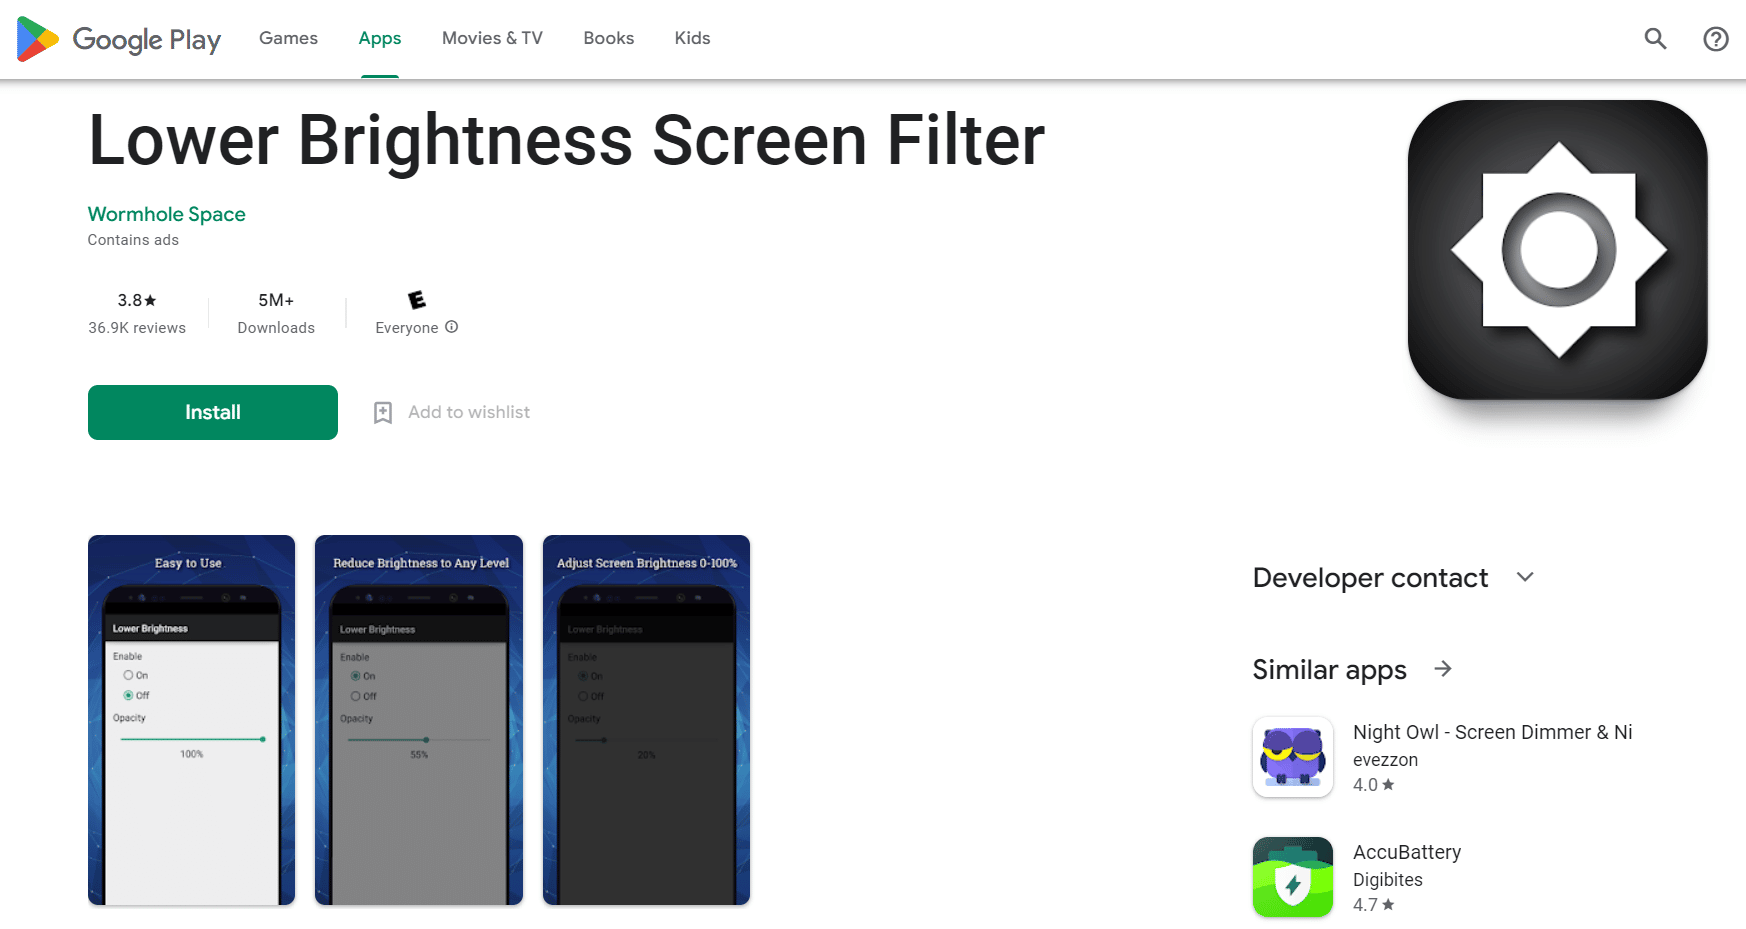 Filtro dello schermo a bassa luminosità | app per schermo più luminoso per ridurre la luminosità dello schermo